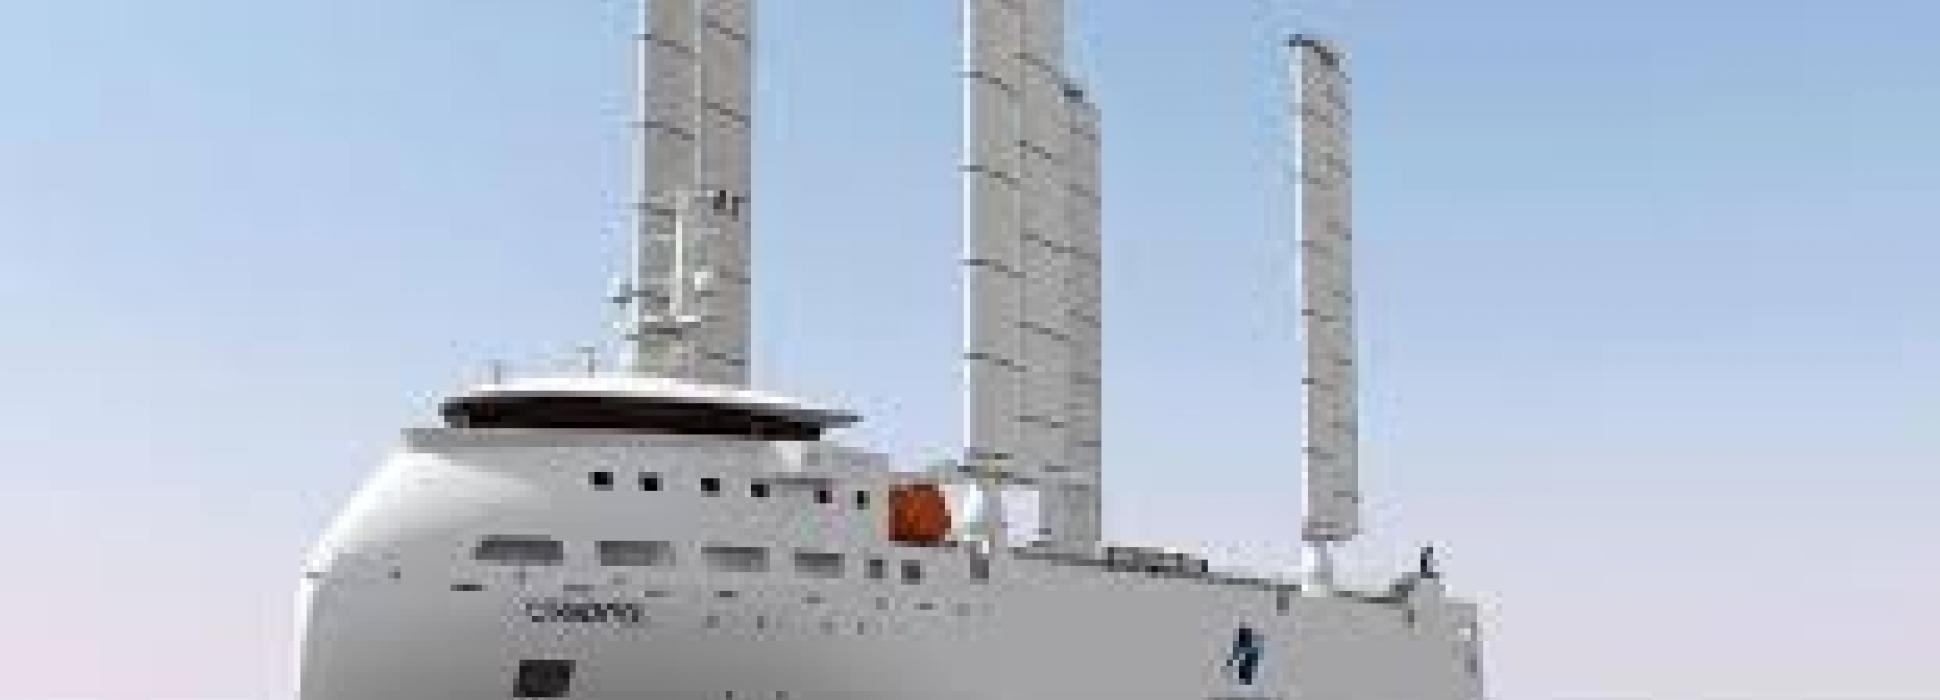 Le navire nouvelle génération de la compagnie maritime Alizés est désormais opérationnel